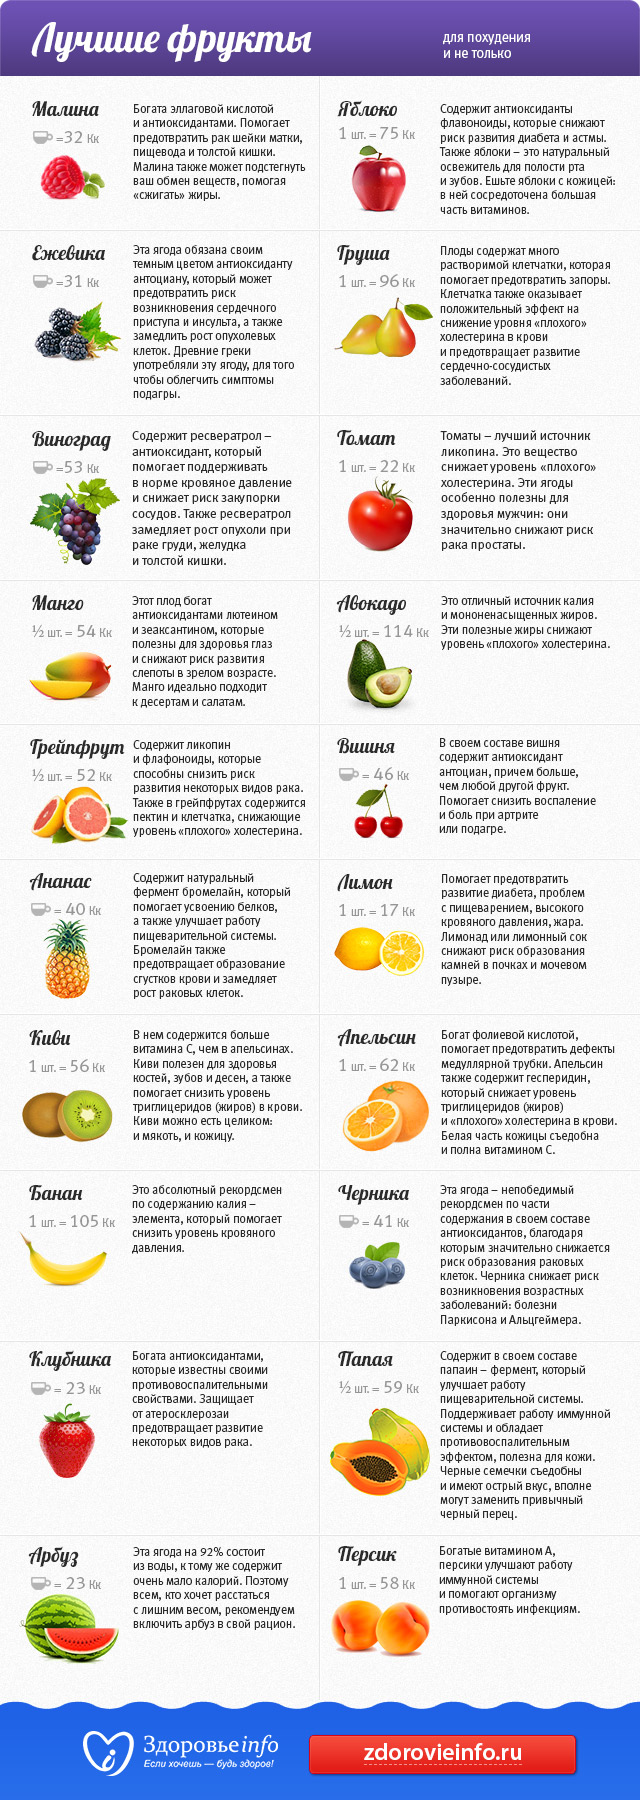 какие фрукты можно есть для похудения